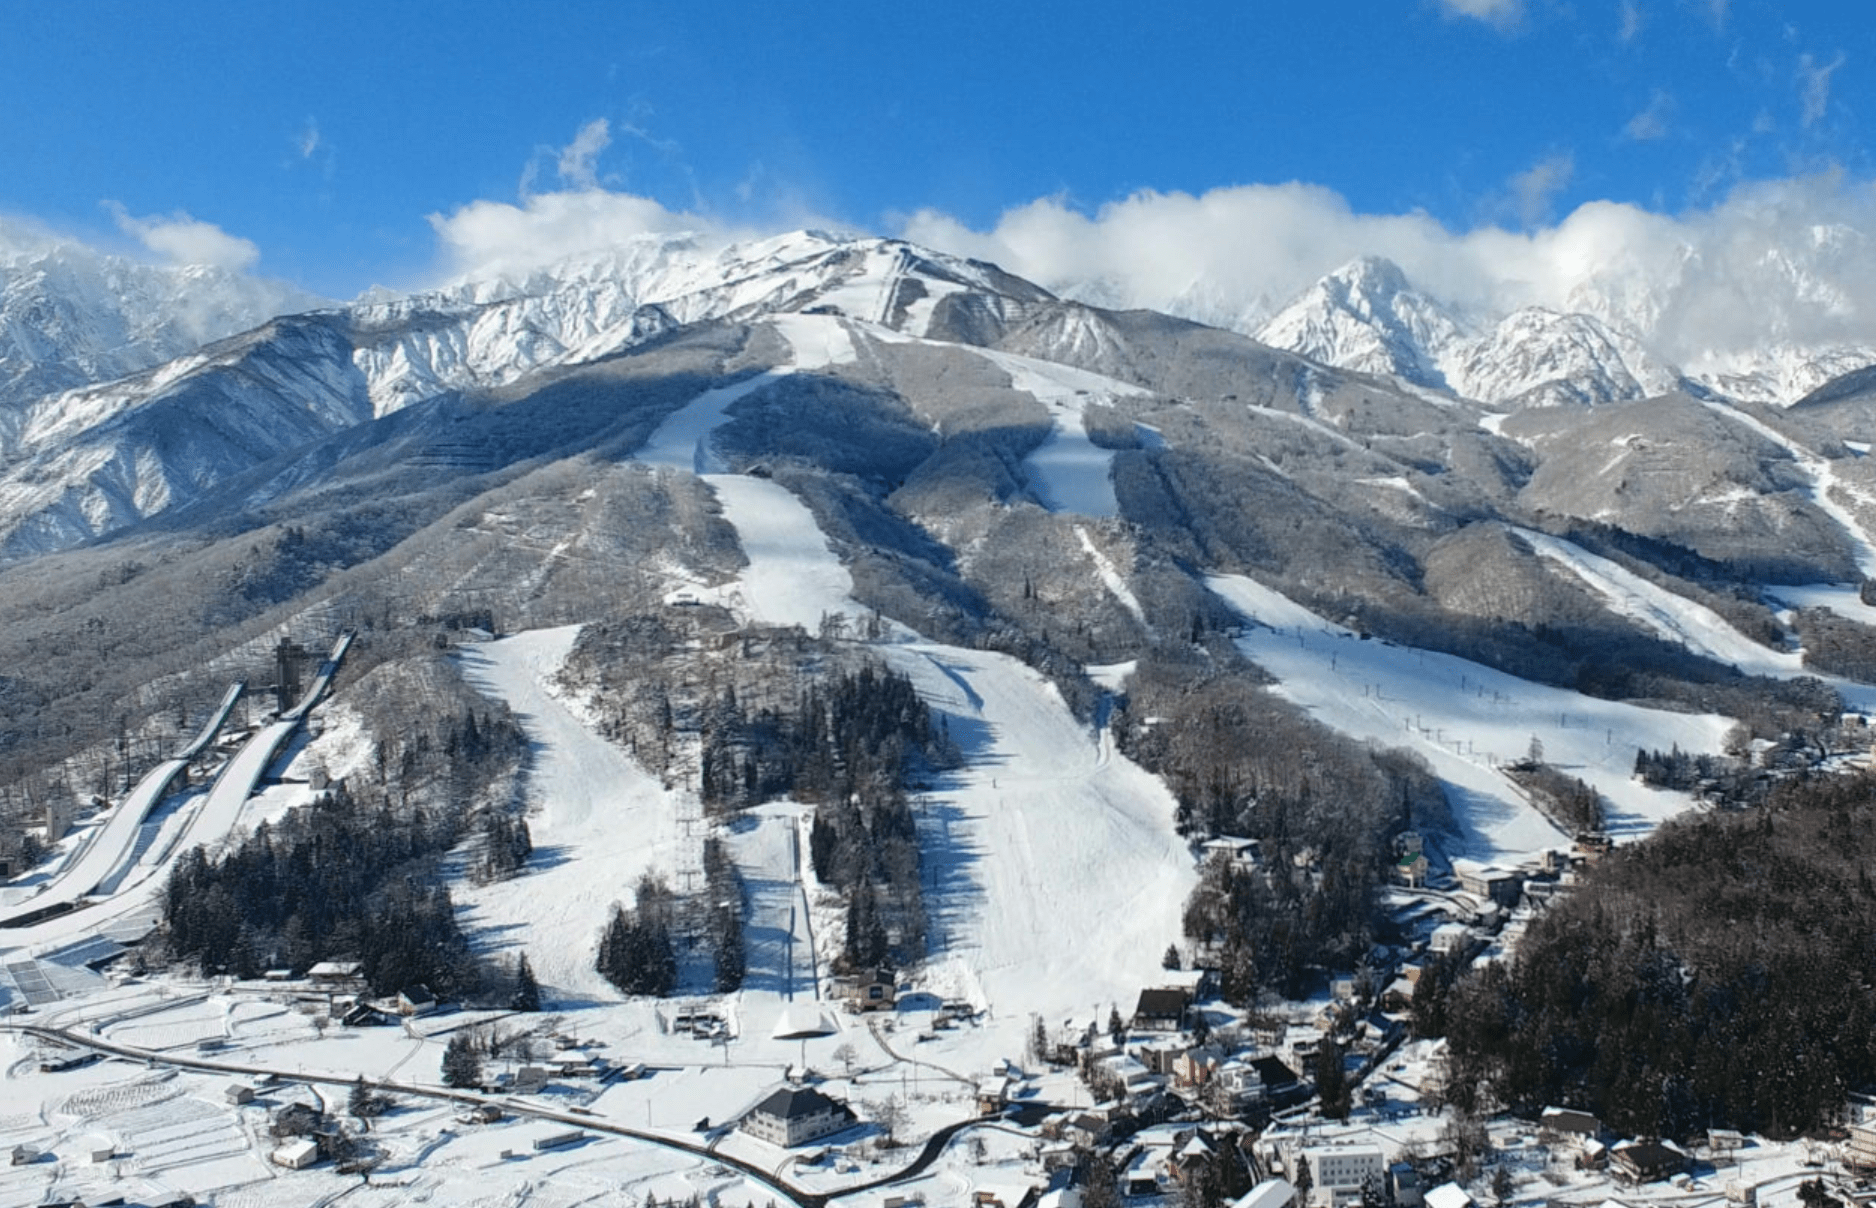 Happo-one Ski Resort